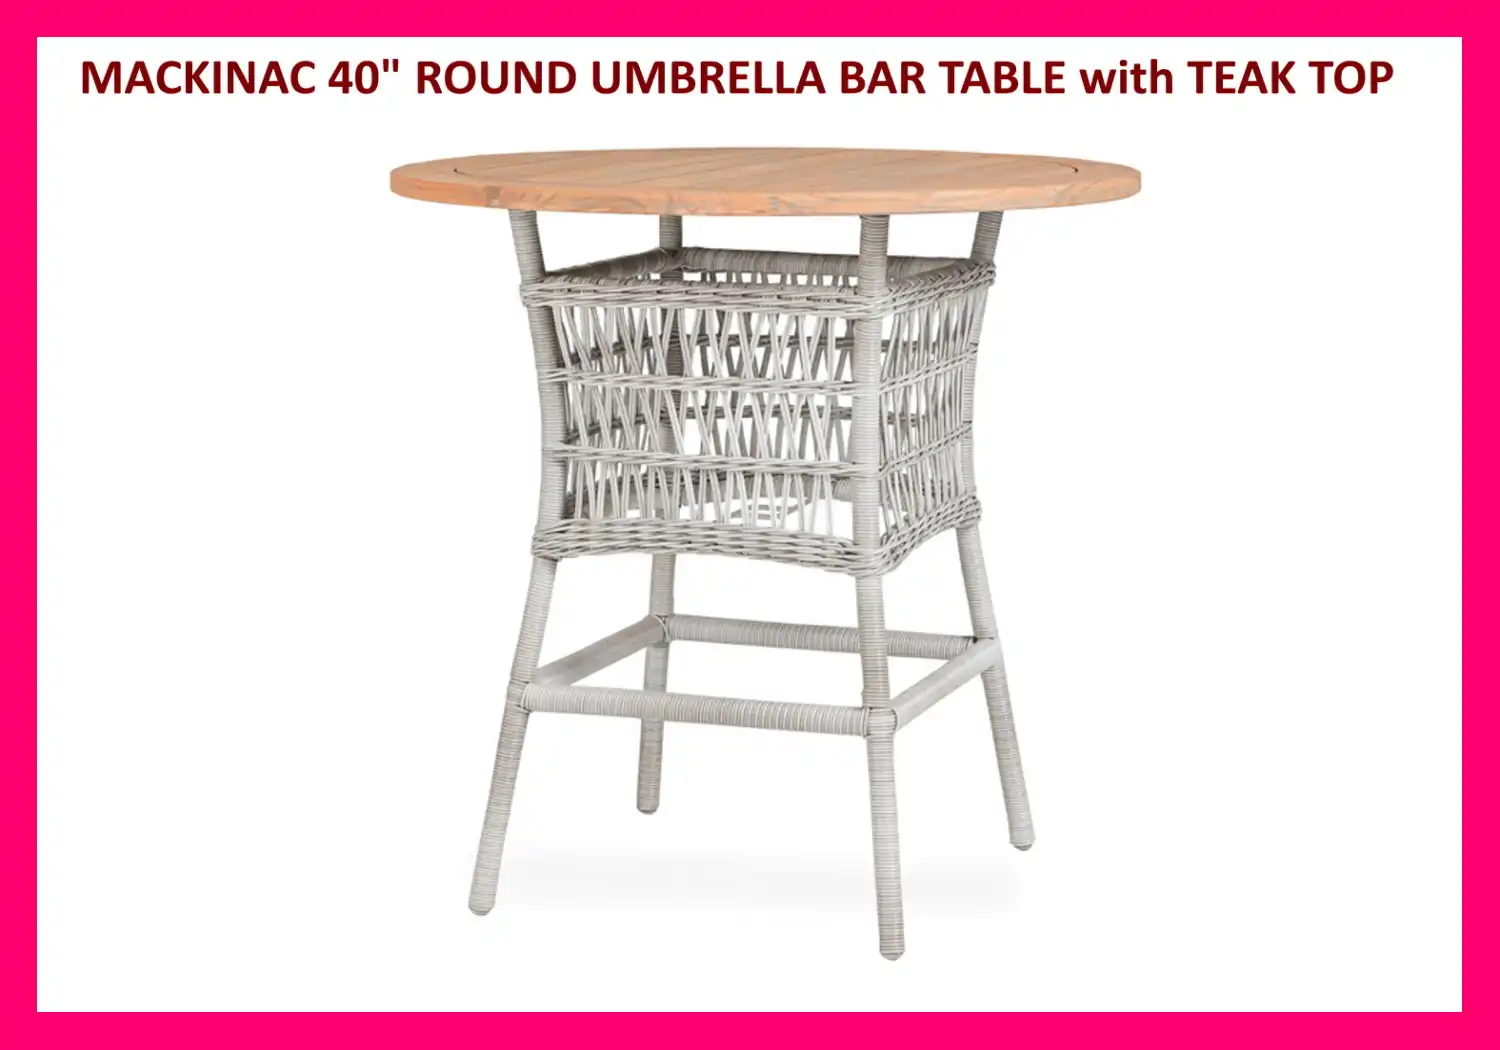 MACKINAC 40" ROUND UMBRELLA BAR TABLE with TEAK TOP